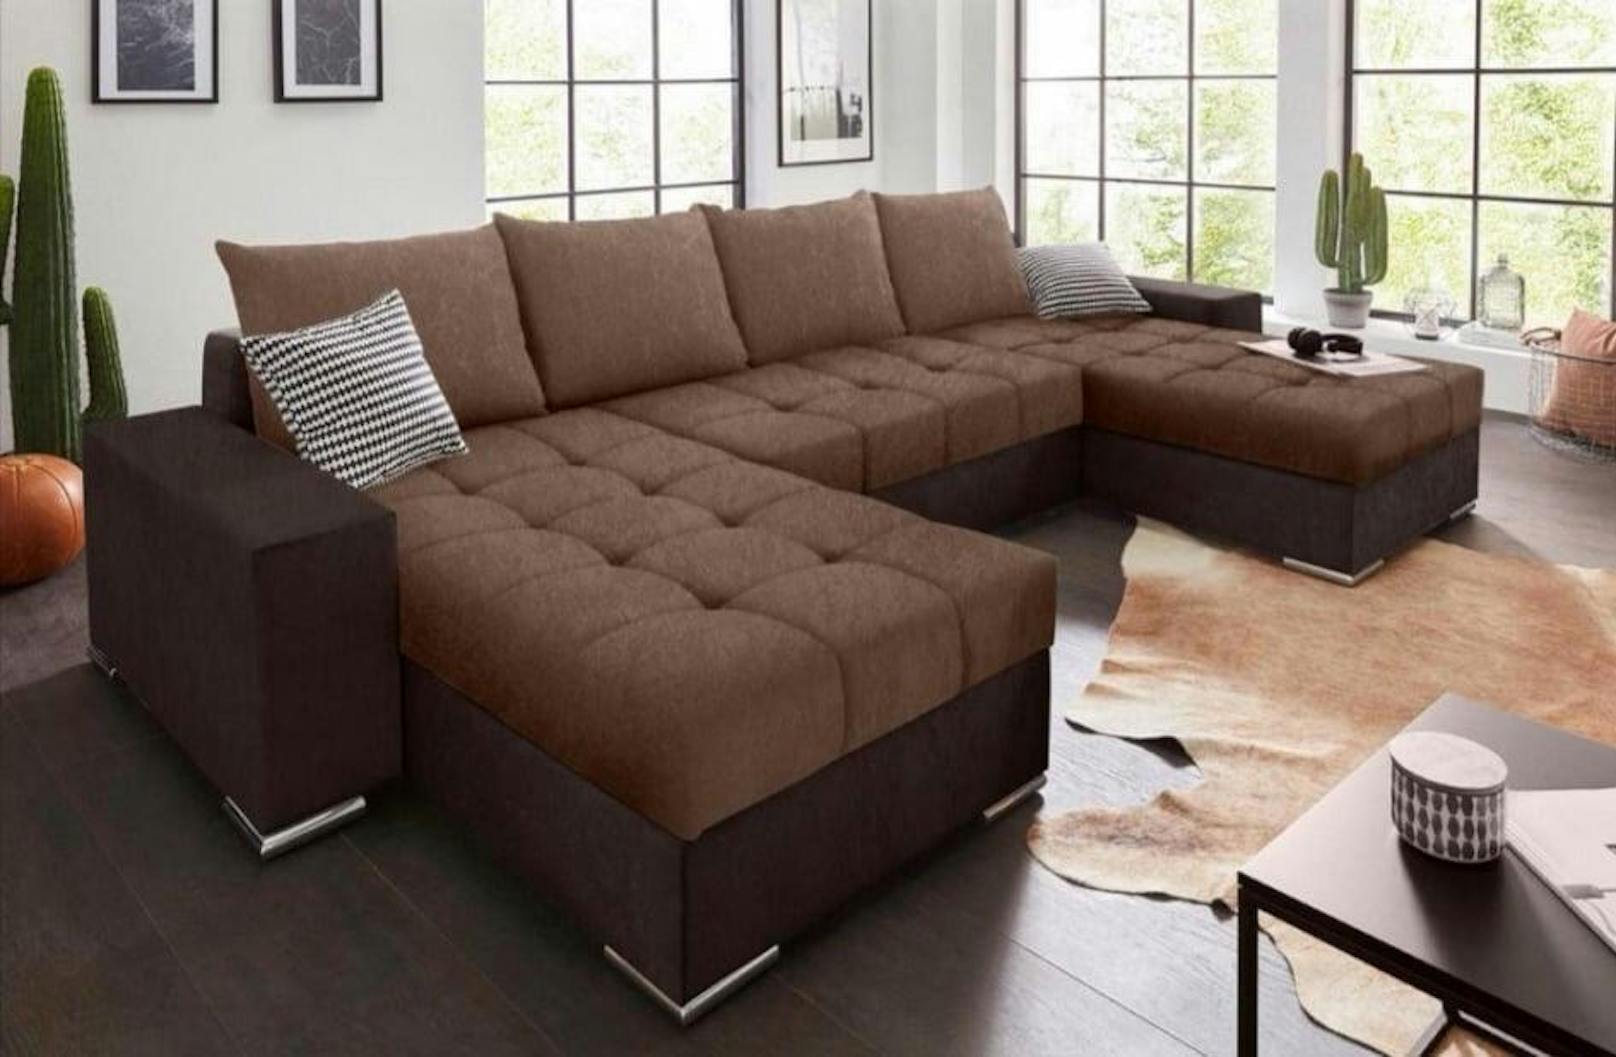 Timo G. bestellte diese Sofa (Symbol)